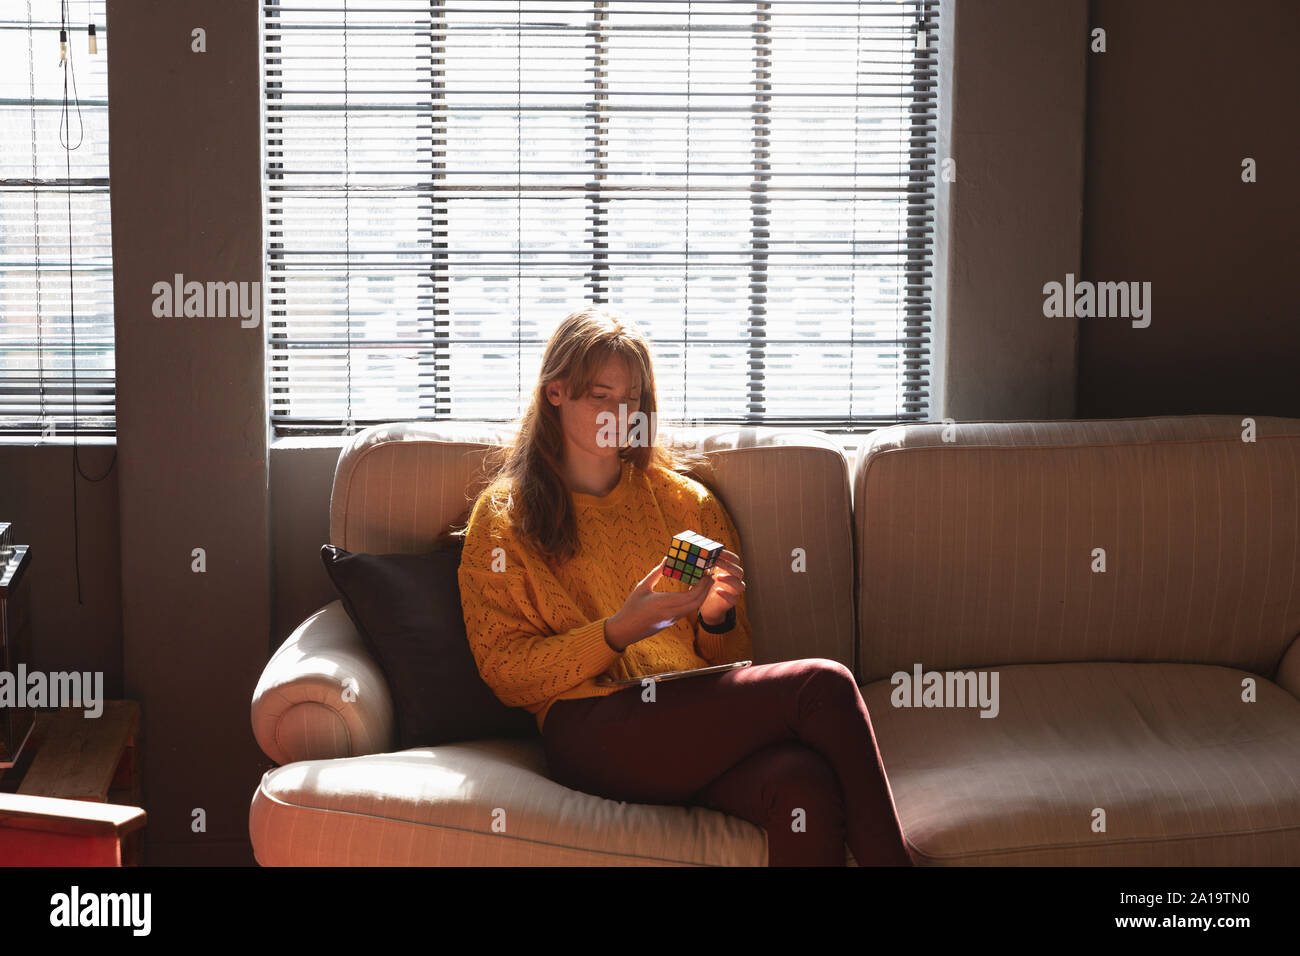 Young Creative Professional Frau mit Smartphones in der sonnendurchfluteten Büro Stockfoto